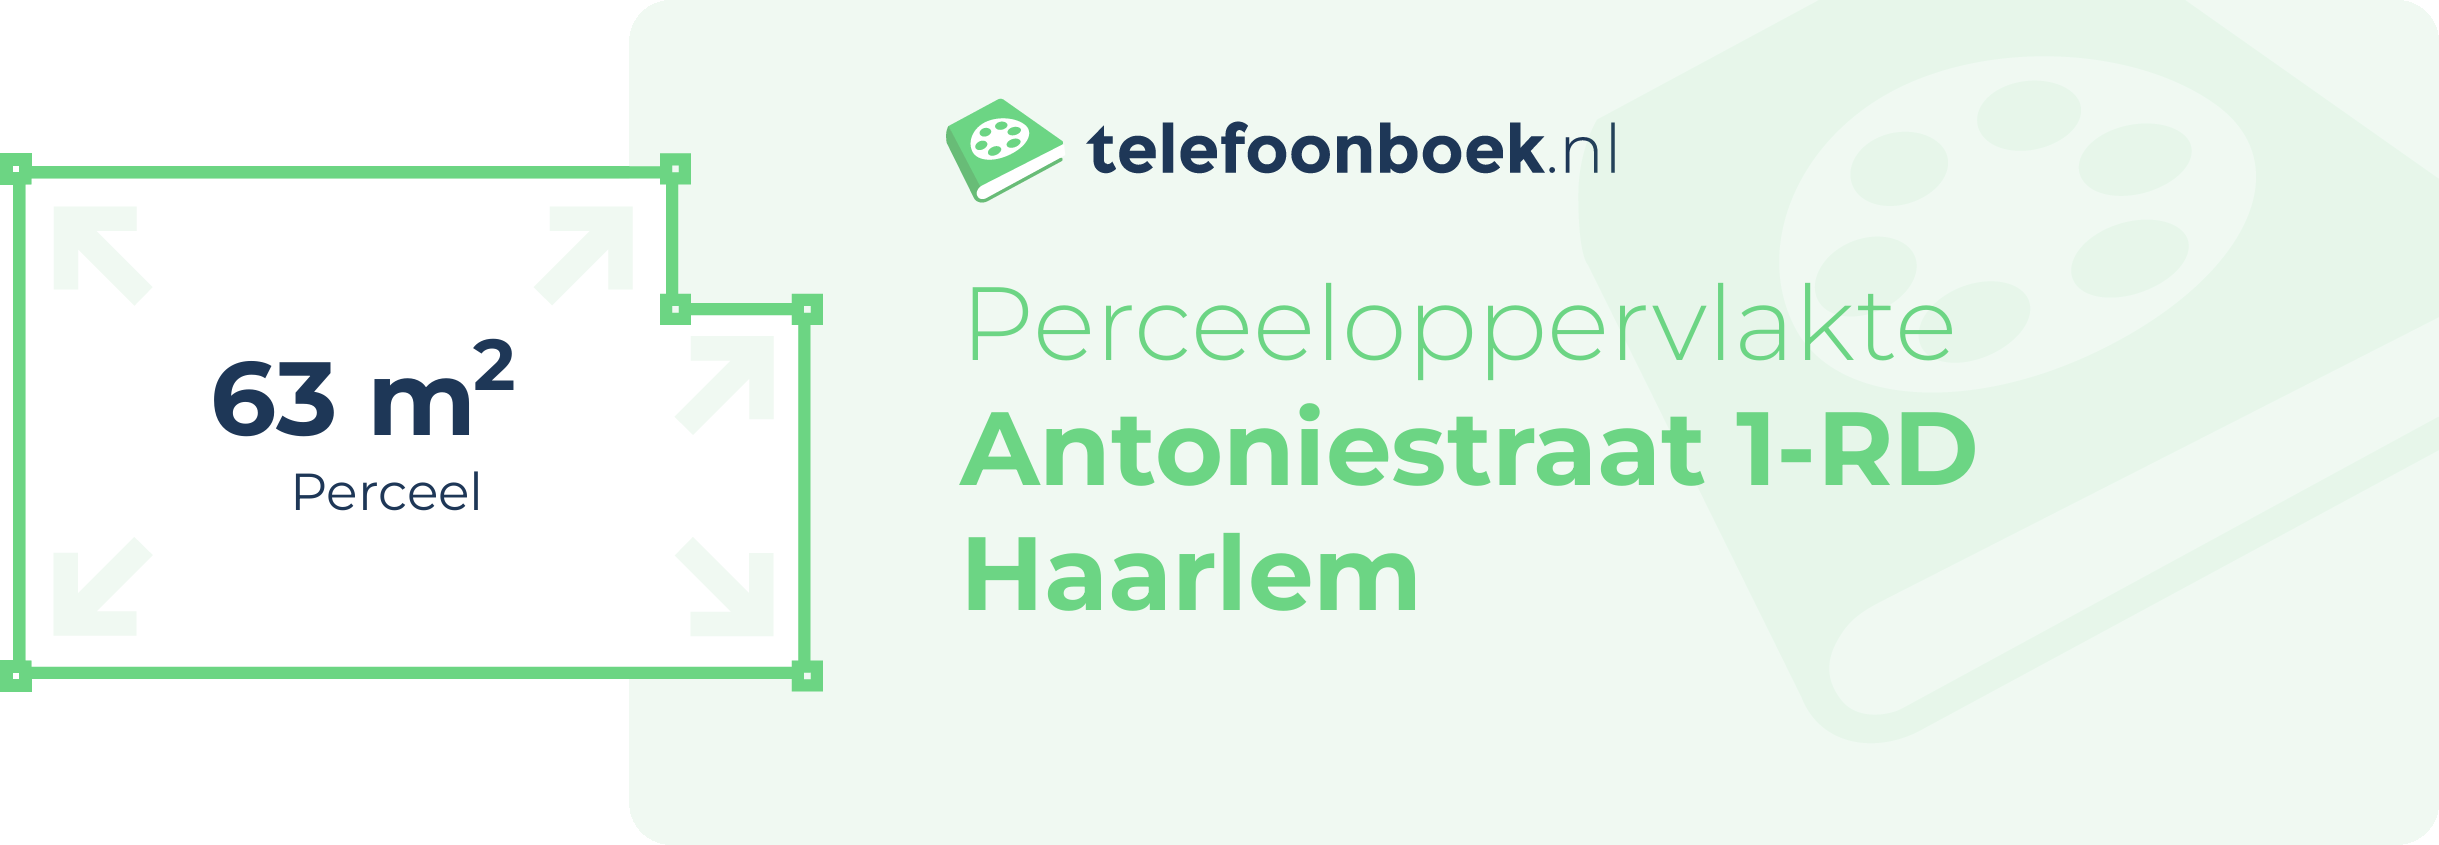 Perceeloppervlakte Antoniestraat 1-RD Haarlem